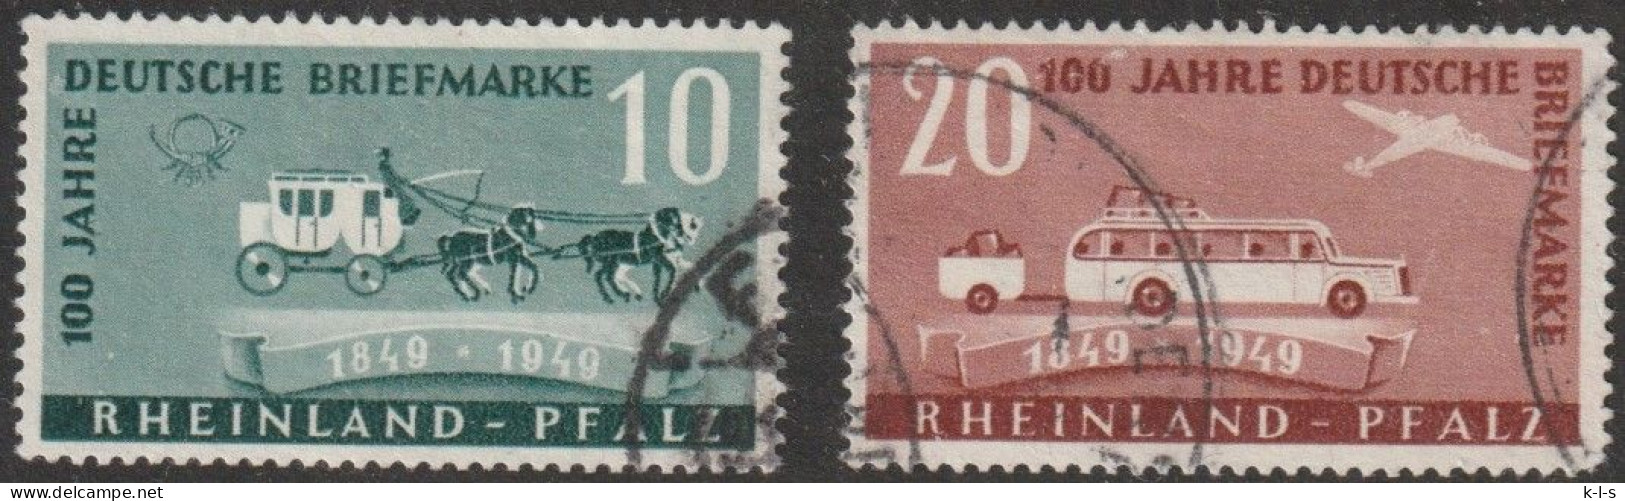 Franz. Zone- Rheinland Pfalz: 1949, Mi. Nr. 49-50,  100 Jahre Deutsche Briefmarken.  Gestpl./used - Renania-Palatinato